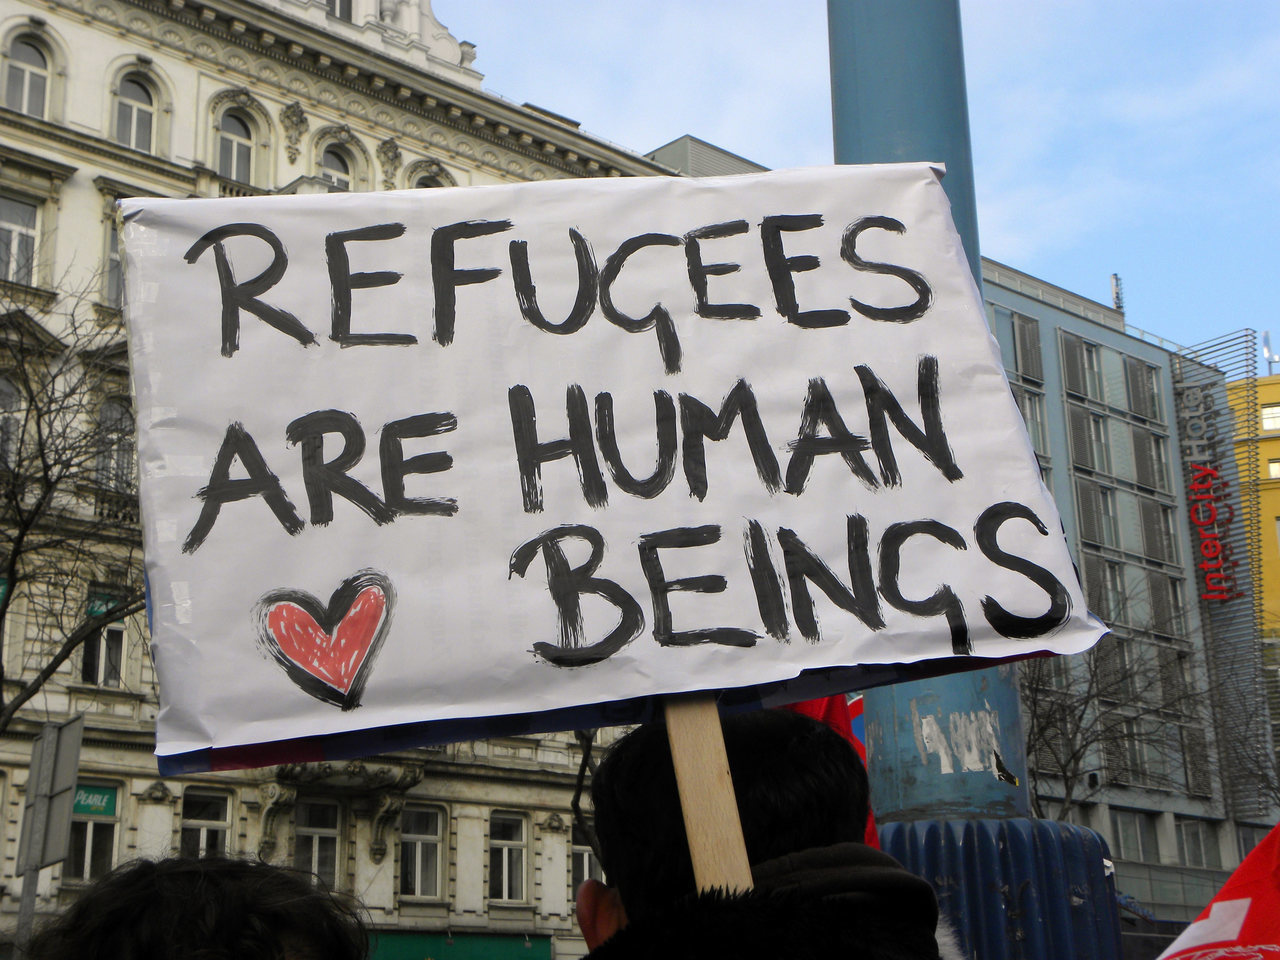 Lager leefloon voor vluchtelingen is tegen het Europese recht, zegt hoogste EU-rechtbank 